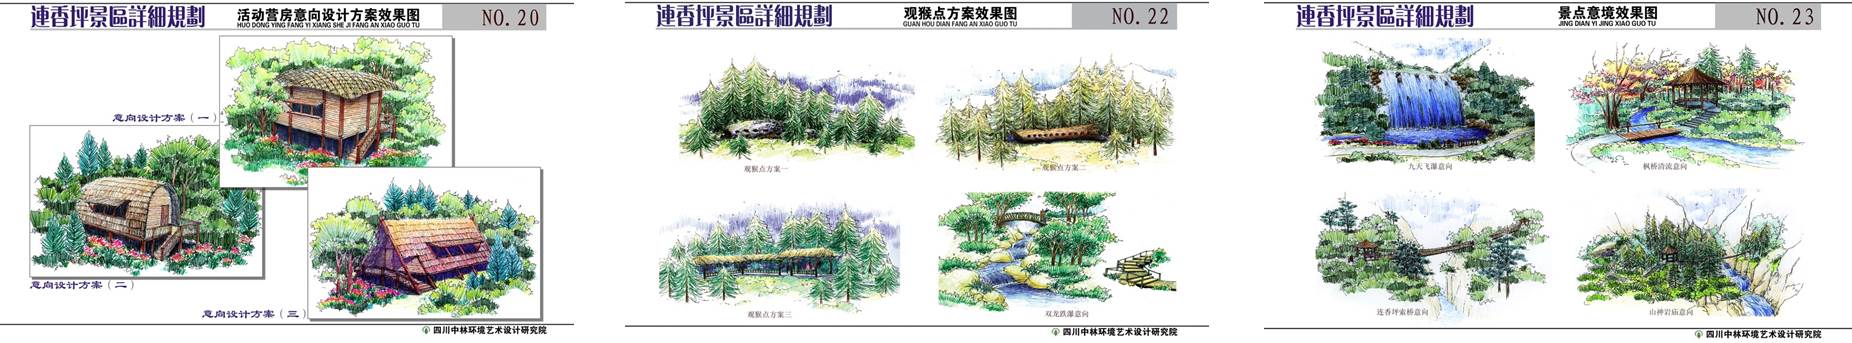 九寨沟白河金丝猴保护区建筑设计